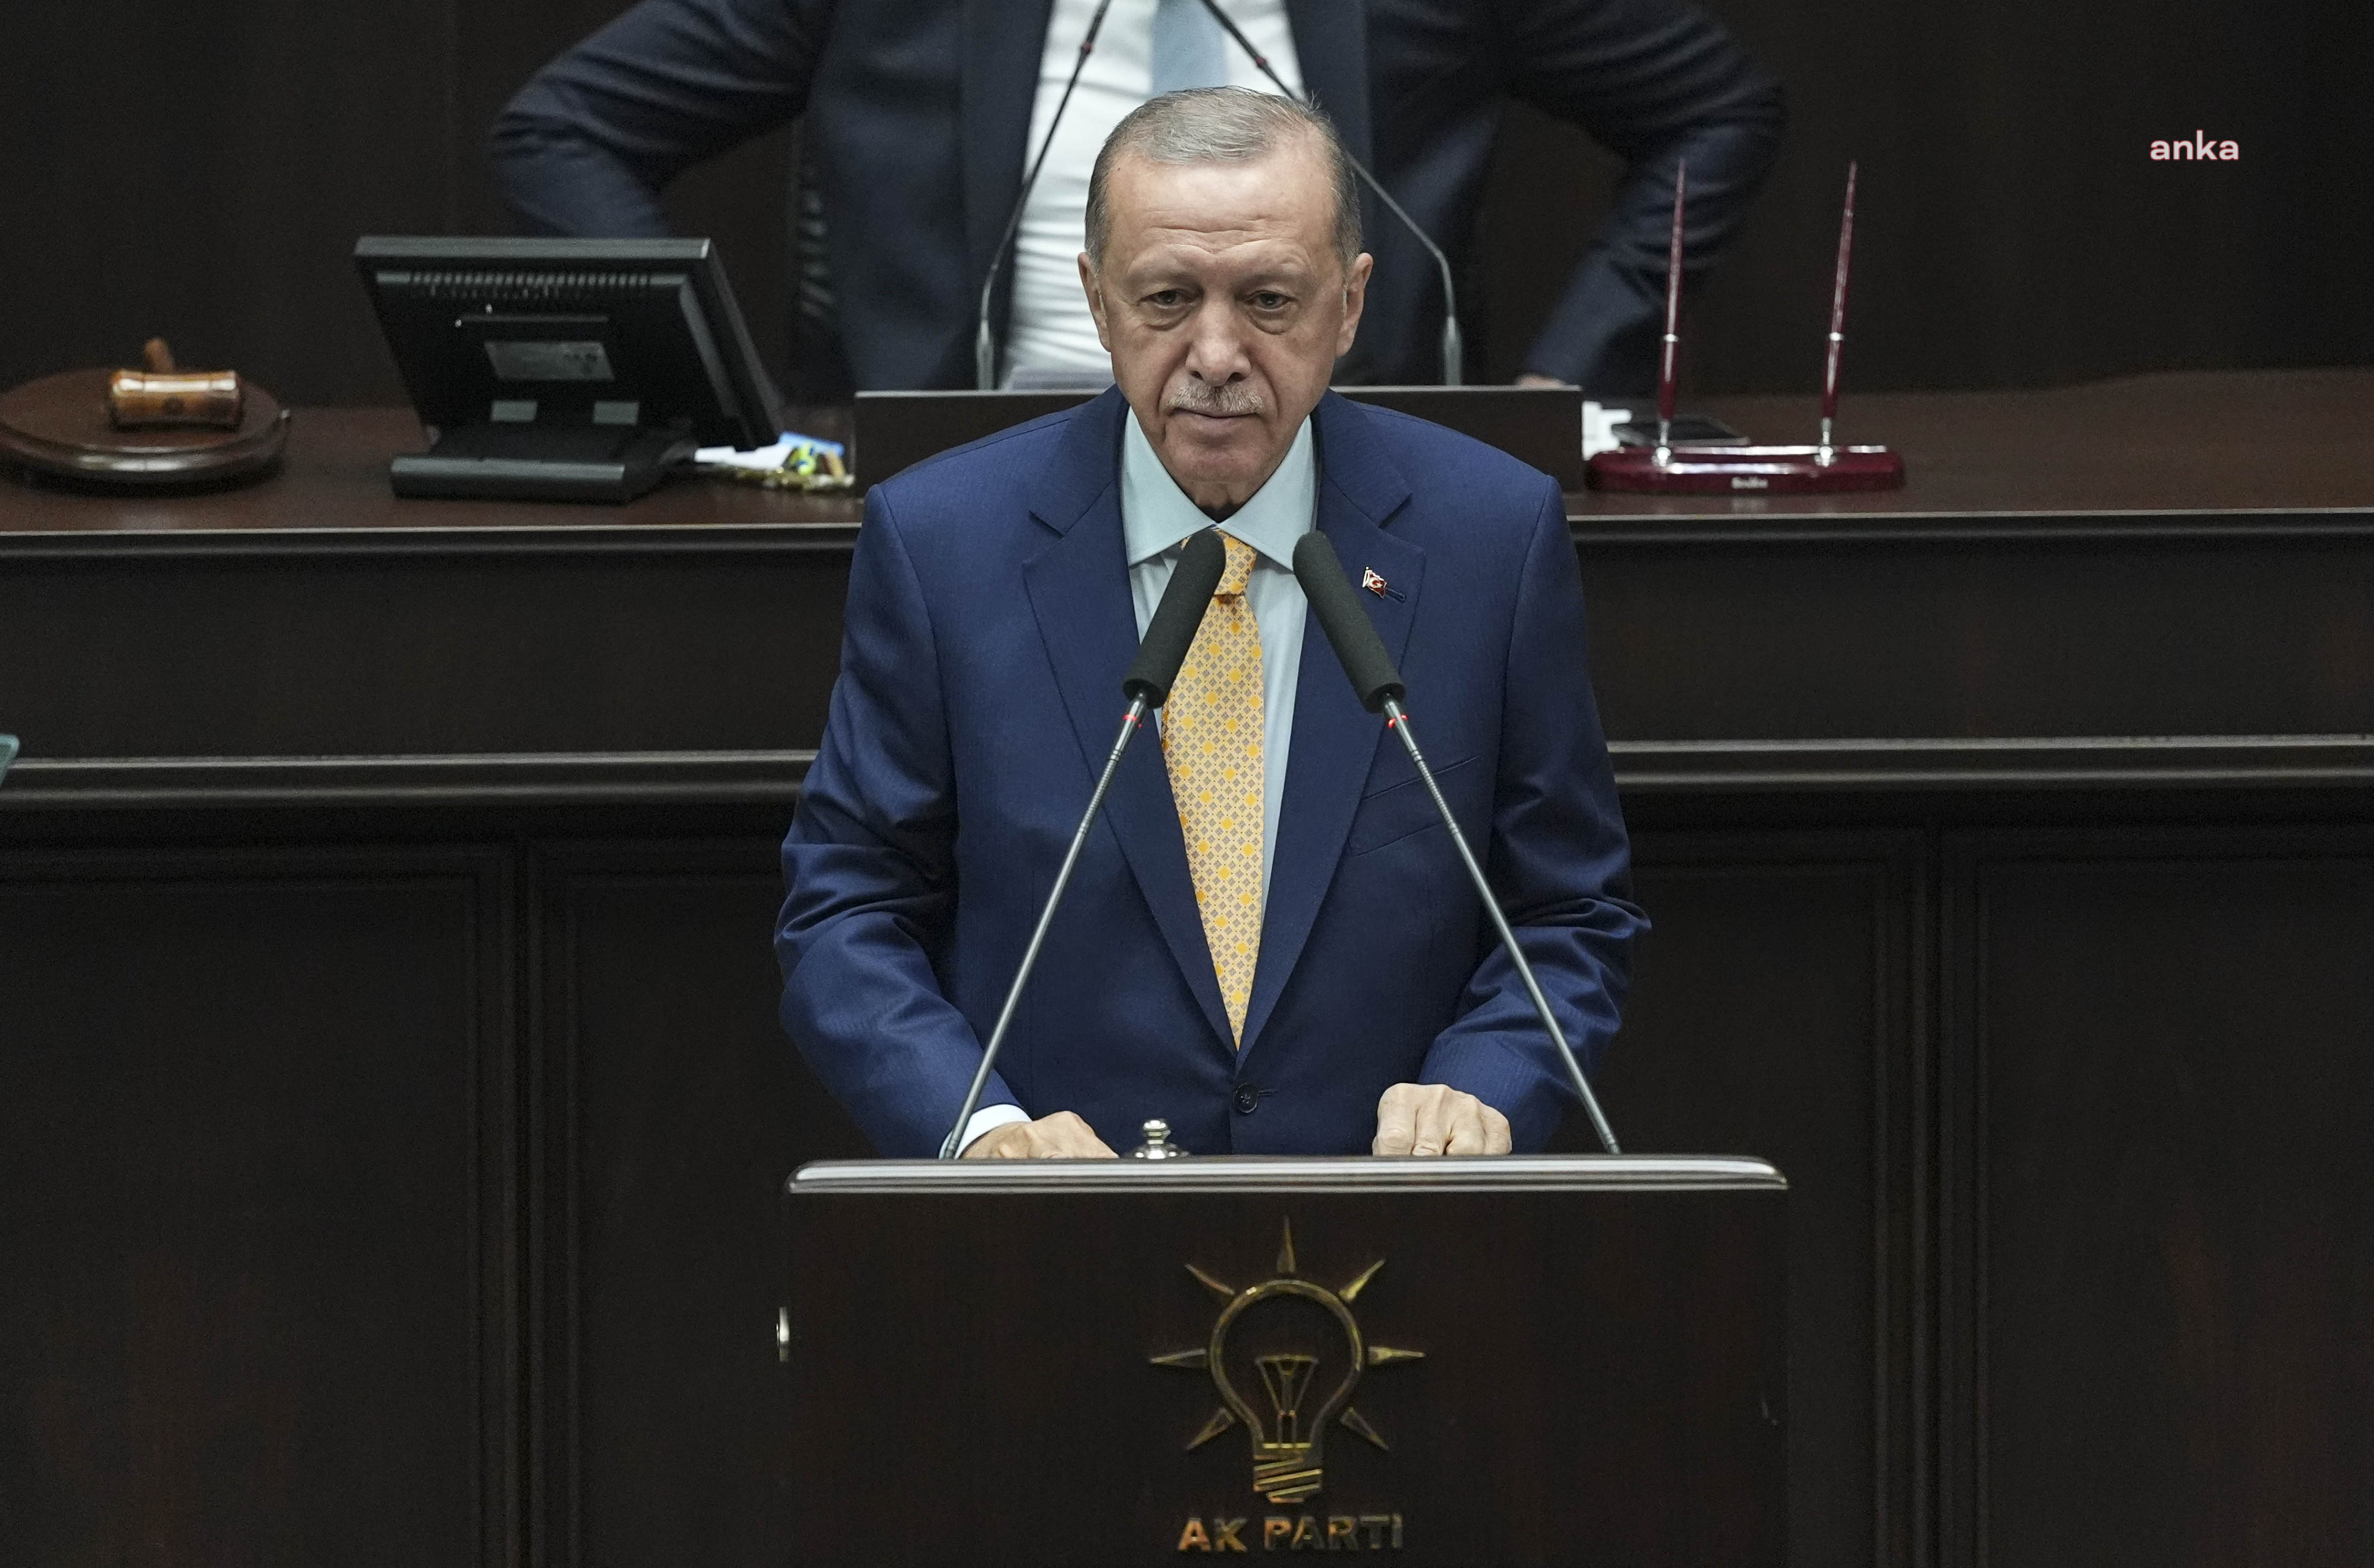 Cumhurbaşkanı ve akp genel başkanı recep tayyip erdoğan, yerel seçim sonuçlarını değerlendirirken, "katılım oranının düşüklüğü partimizin oylarını da olumsuz etkilemiştir